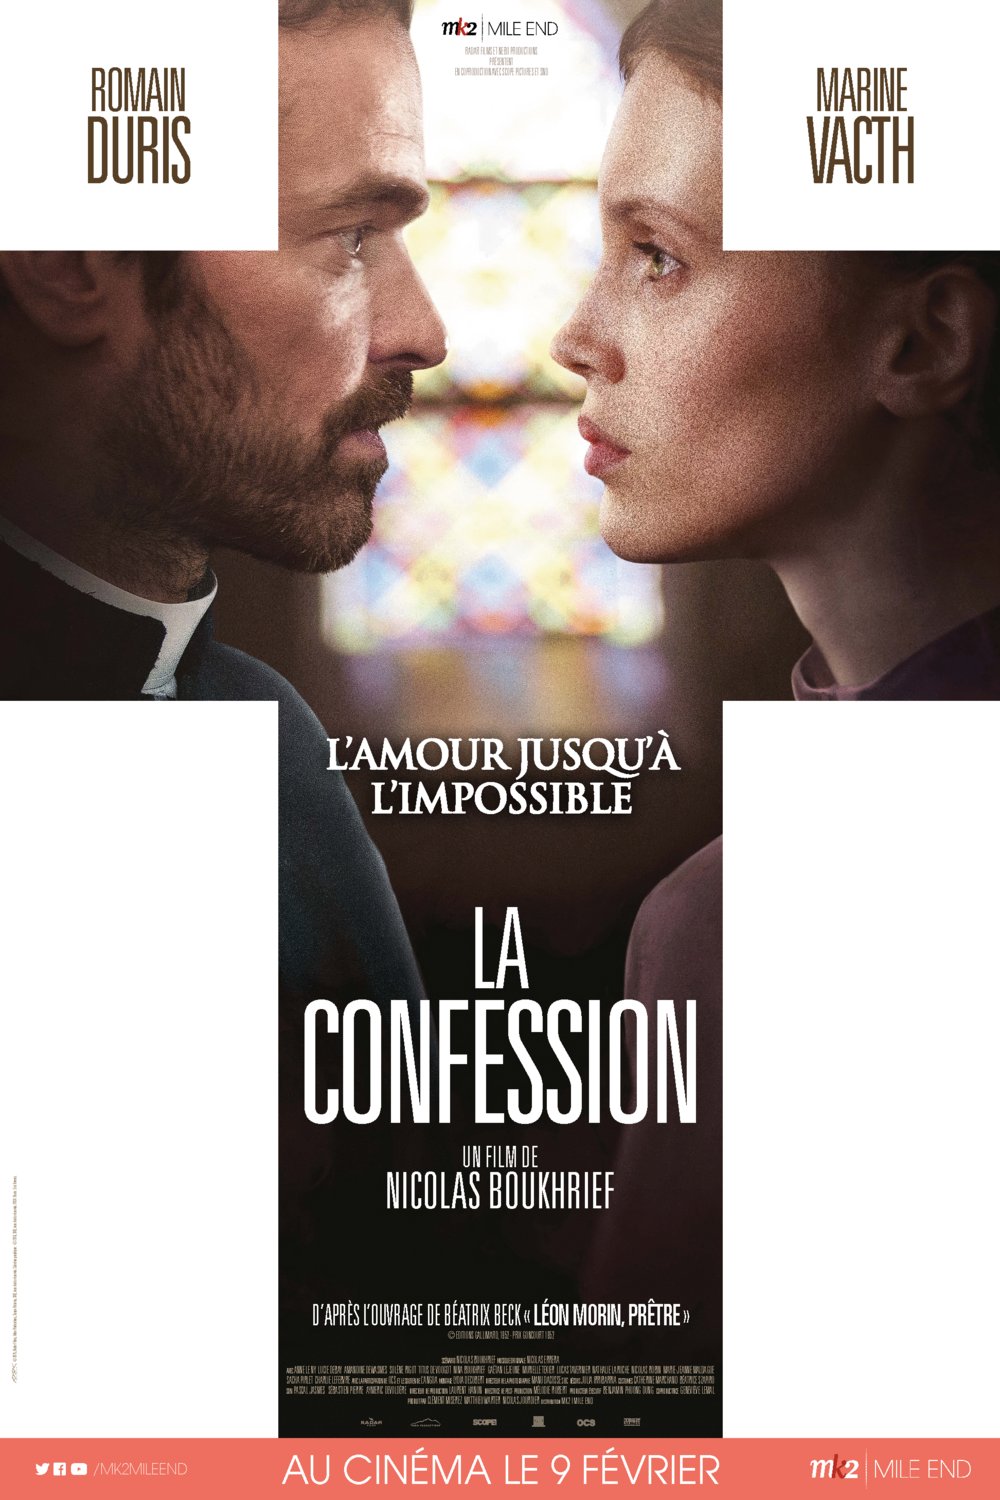 Poster of the movie La Confession v.f.